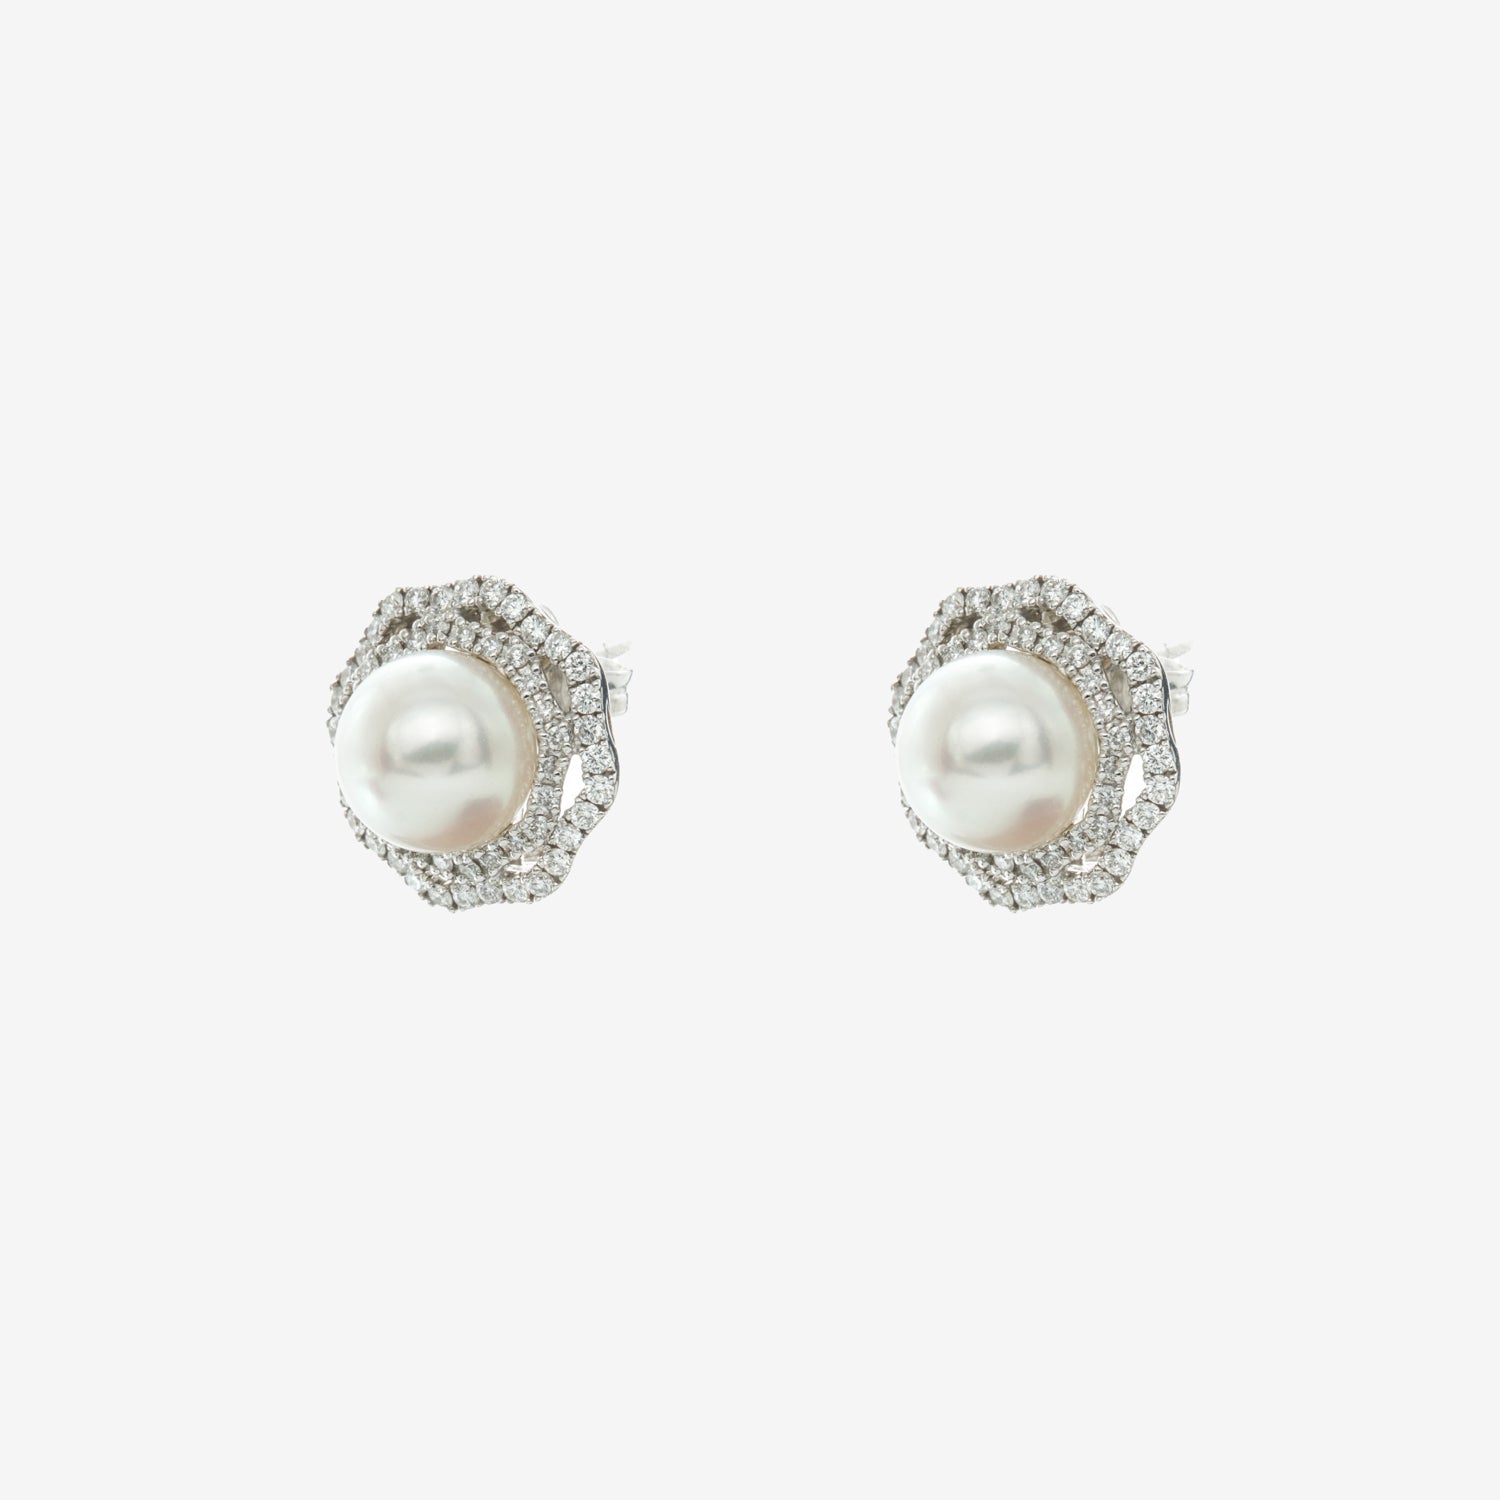 Cercei aur 18k cu perle si diamante 0.54 ct